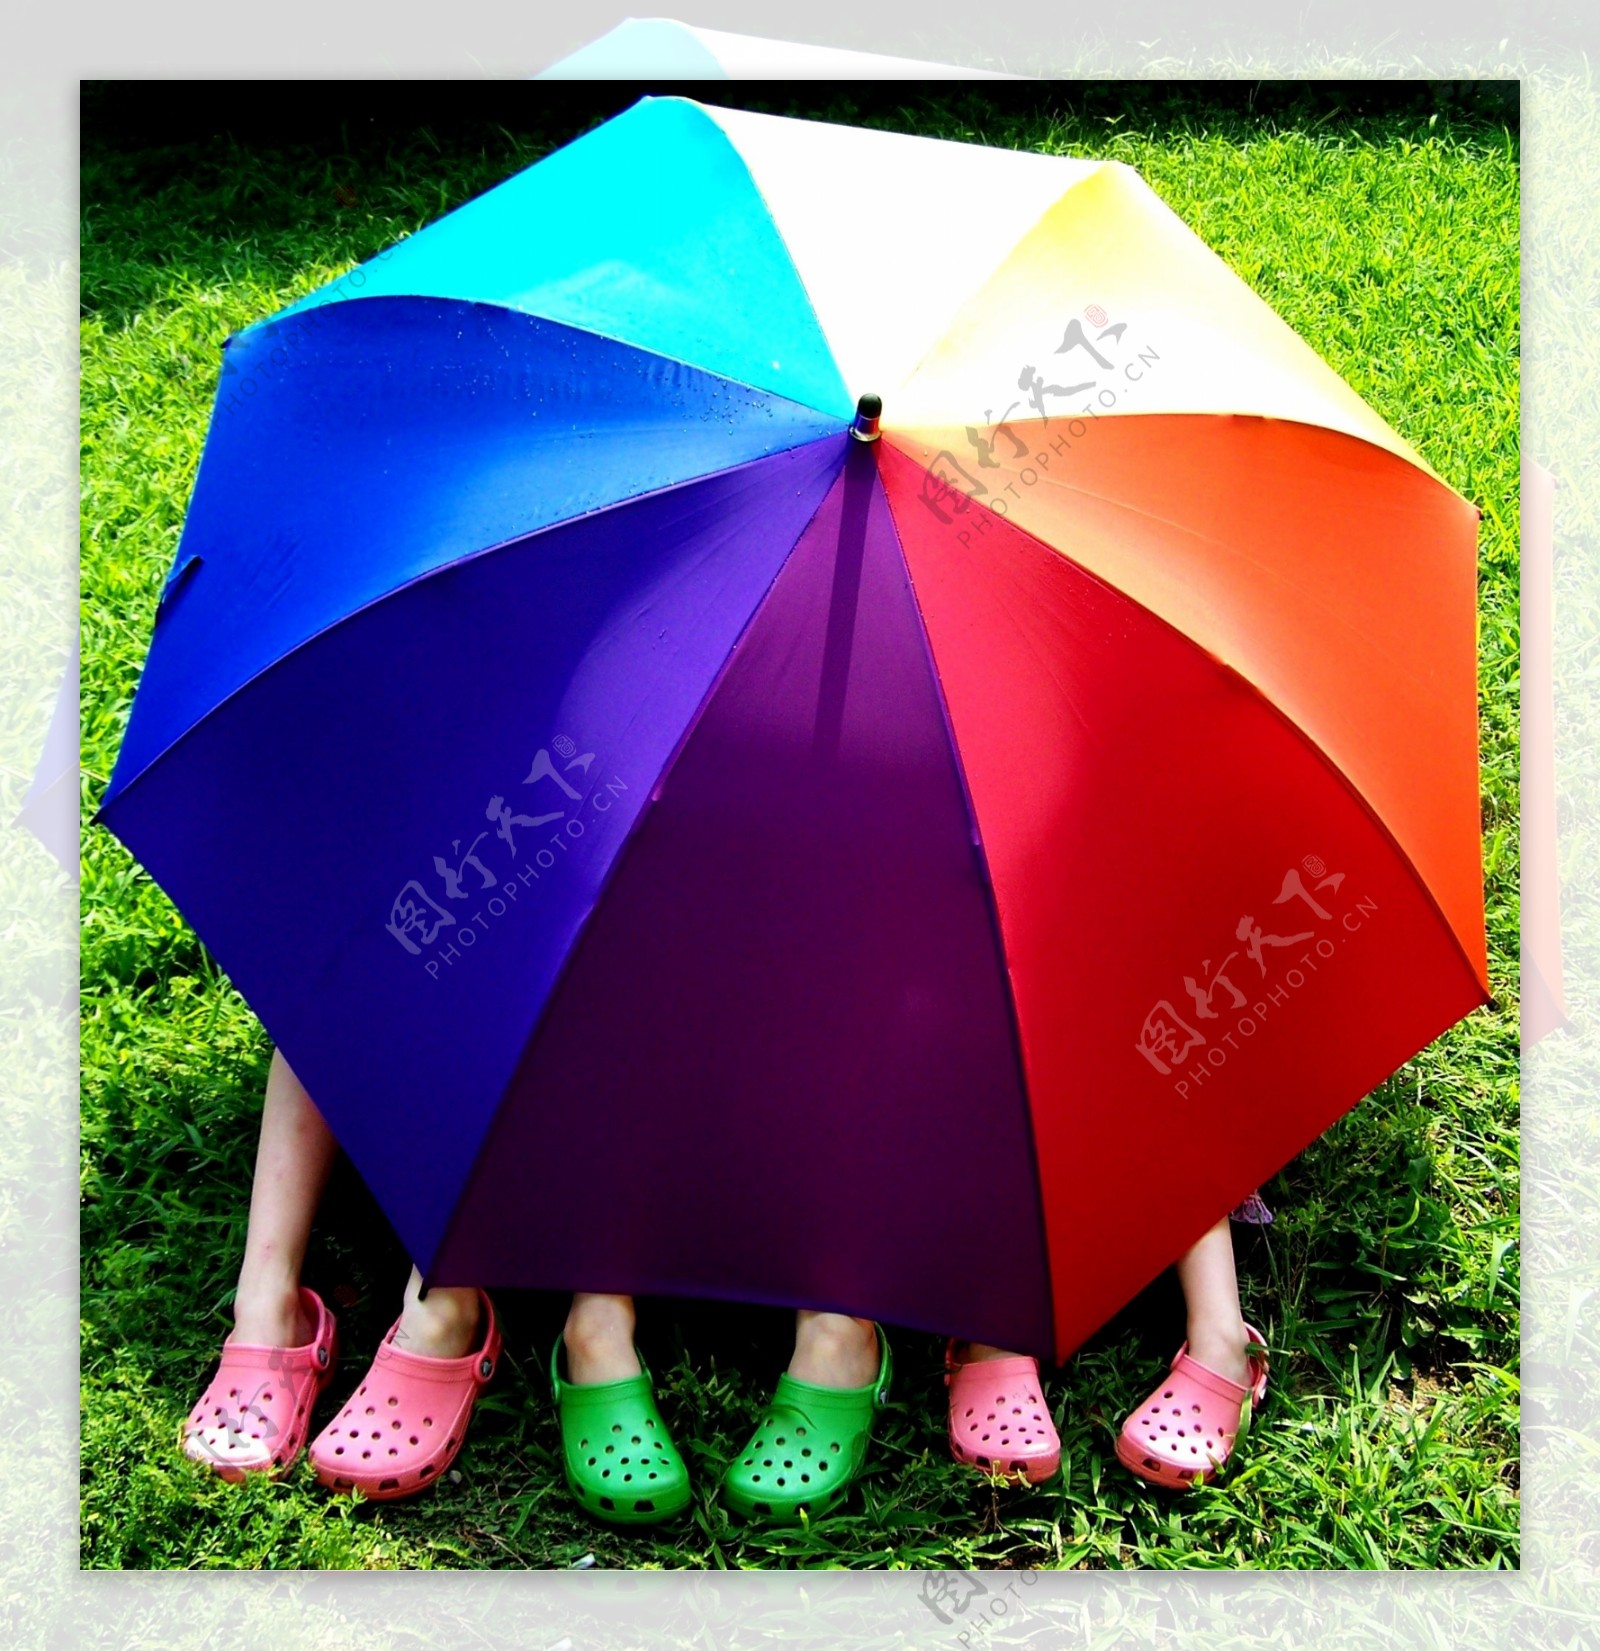 七彩伞雨伞图片